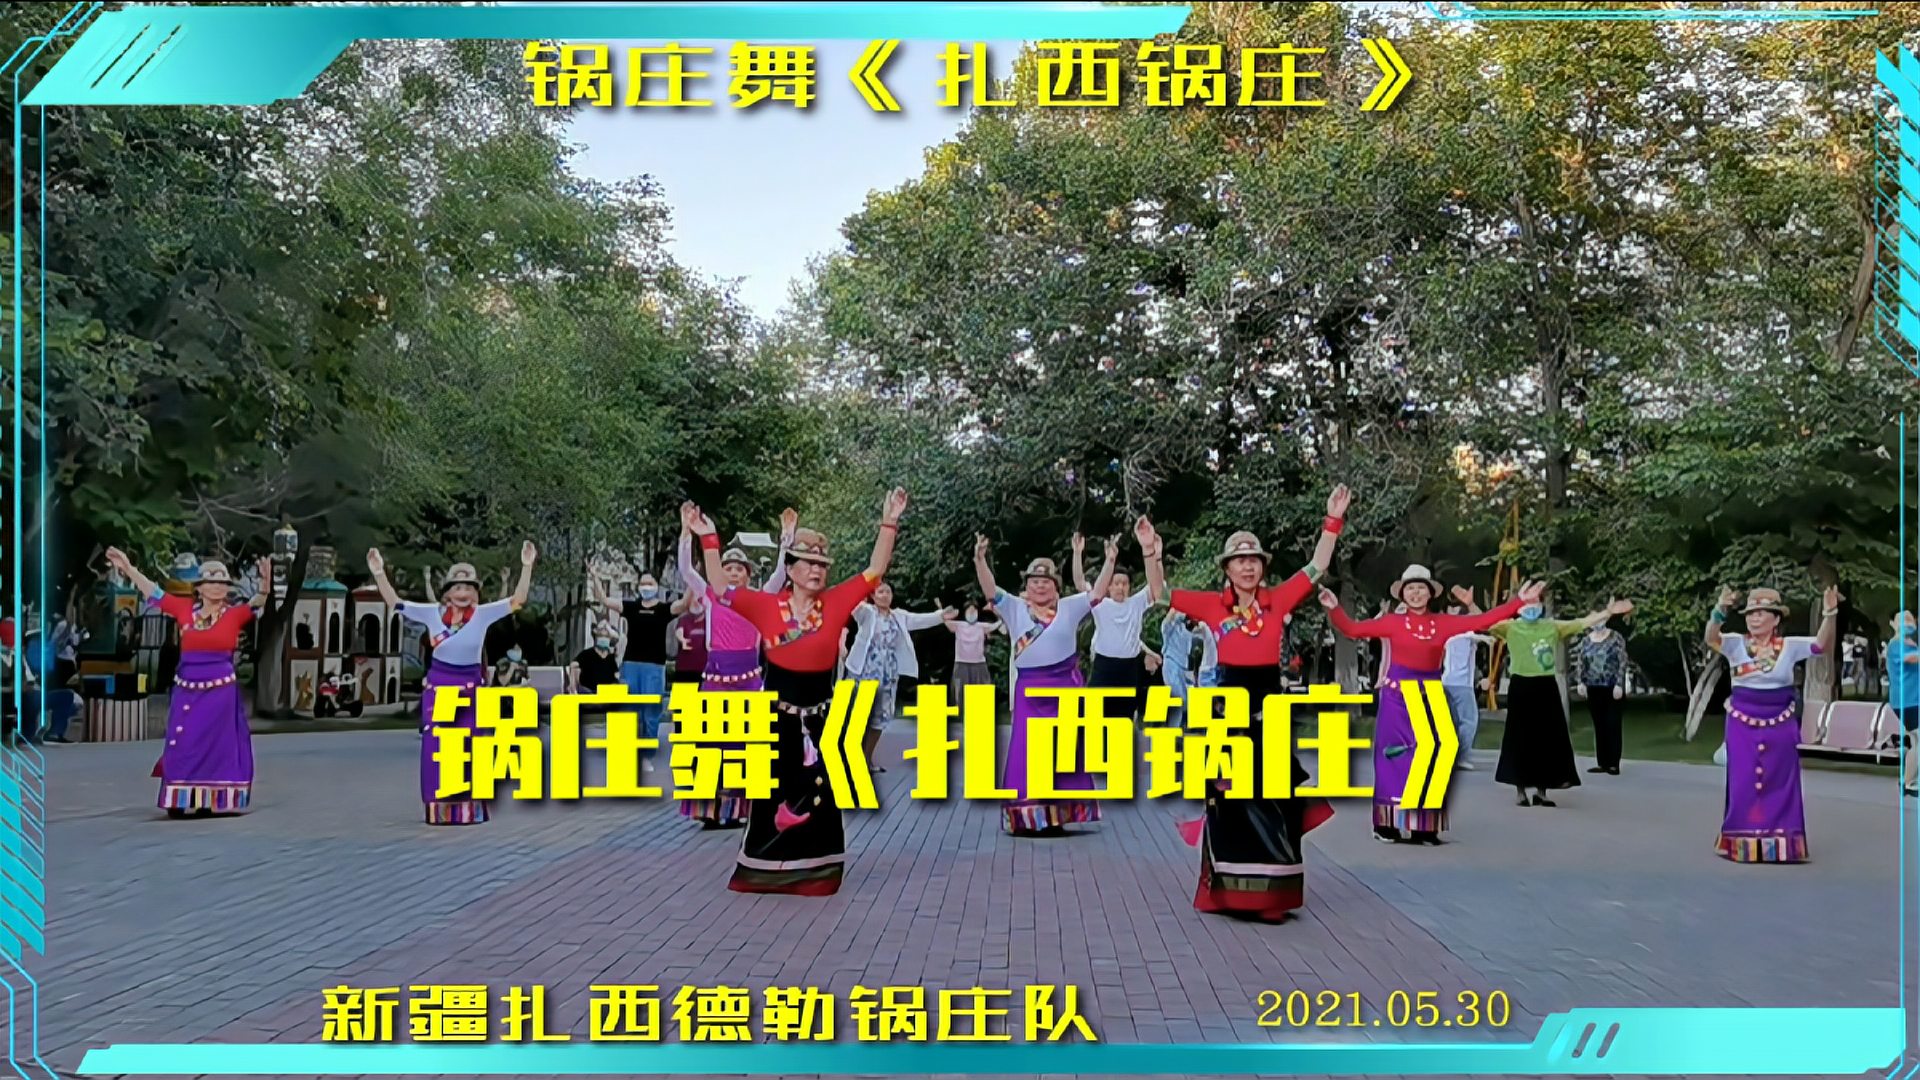 新疆扎西德勒锅庄队在公园学跳一只新曲锅庄舞《扎西锅庄》好看!